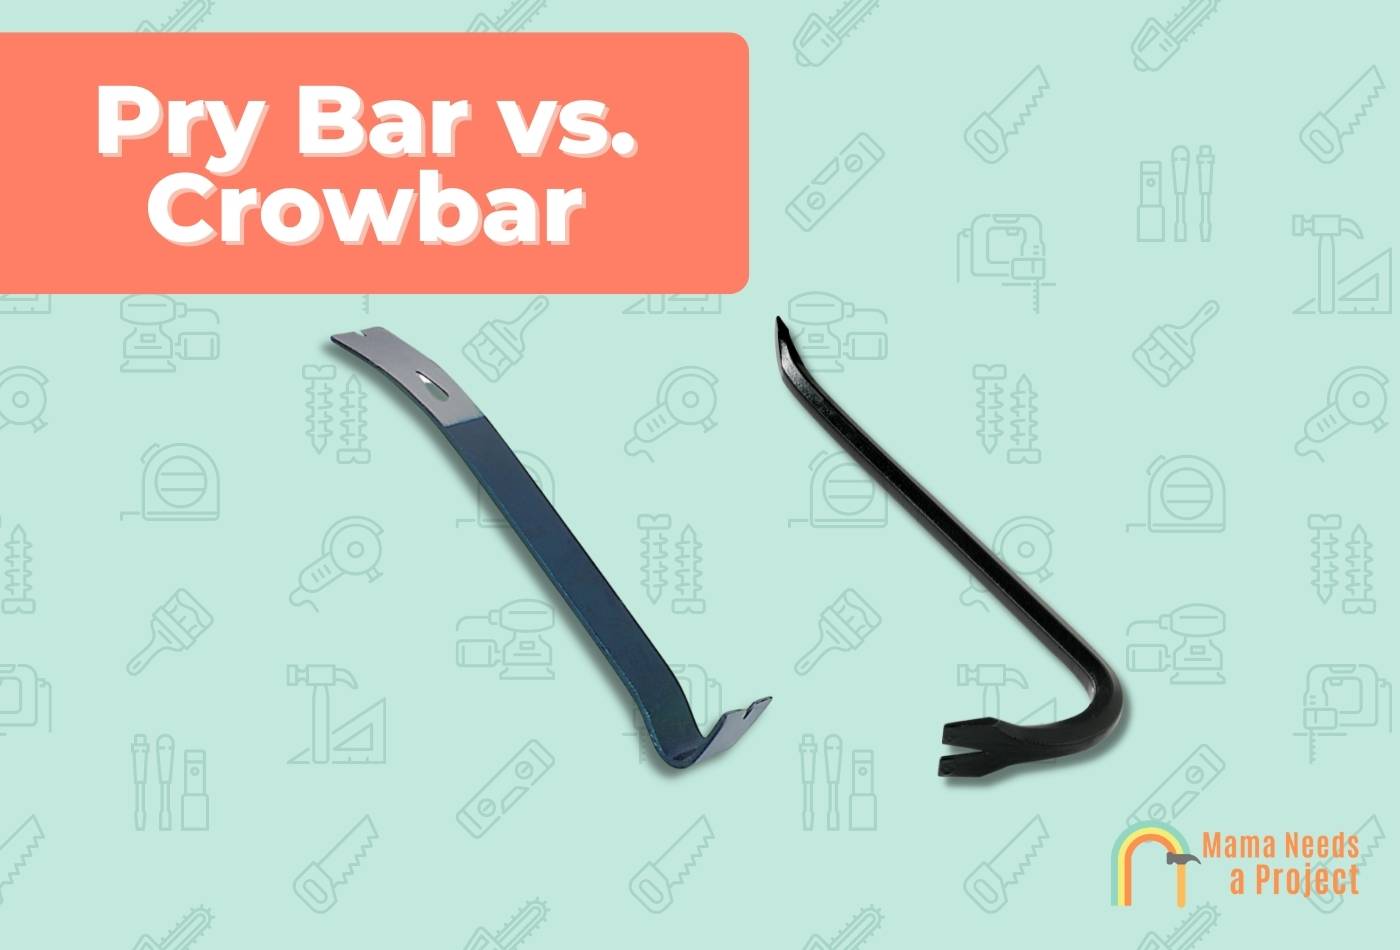 Pry Bar vs. Crowbar